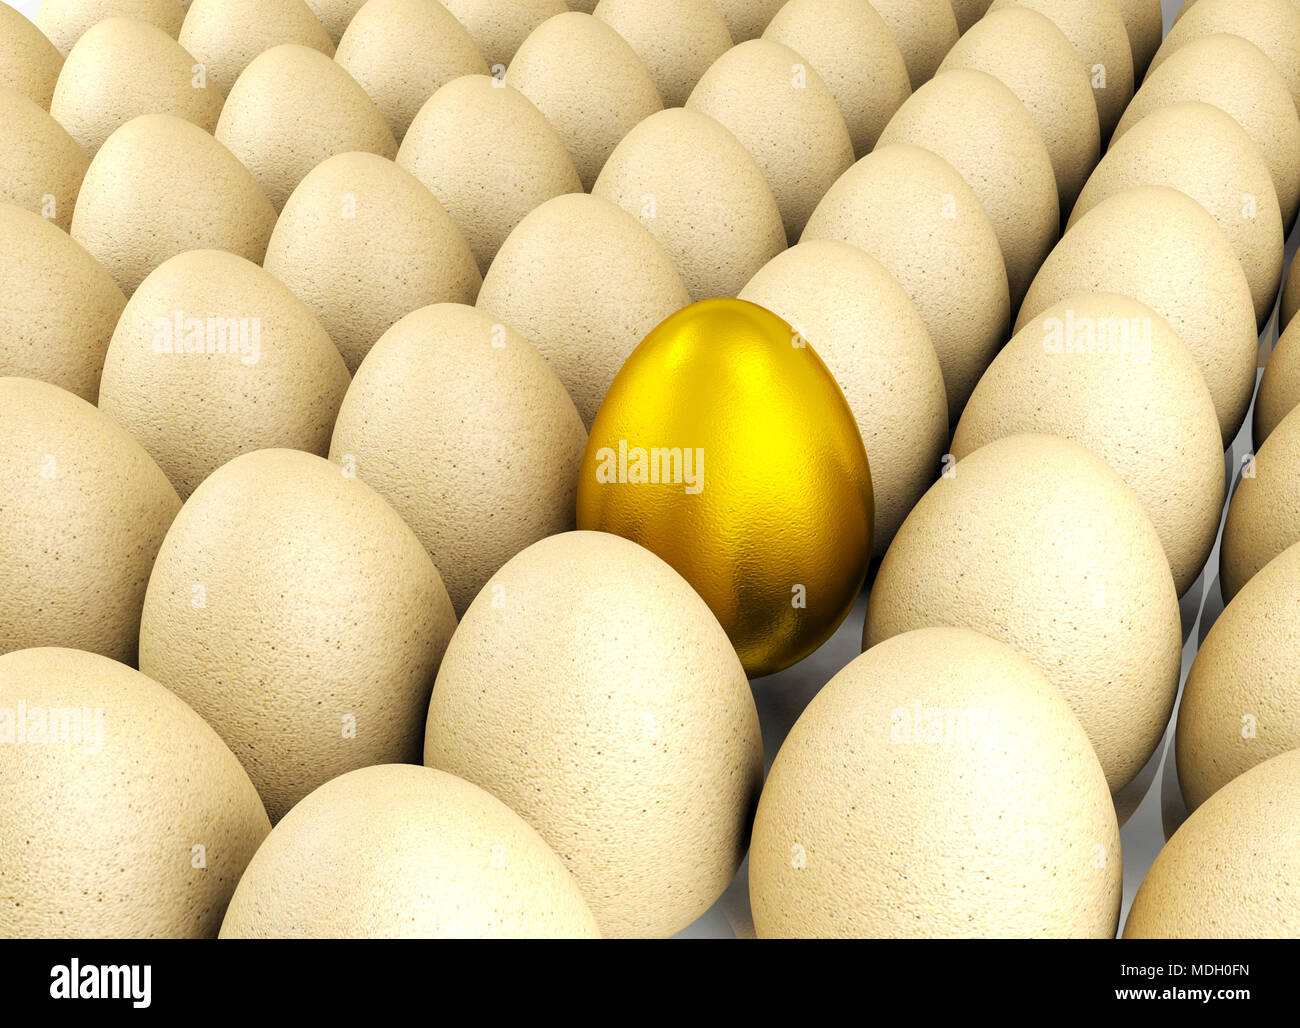 Valioso huevo de oro por concepto de liderazgo Foto de stock